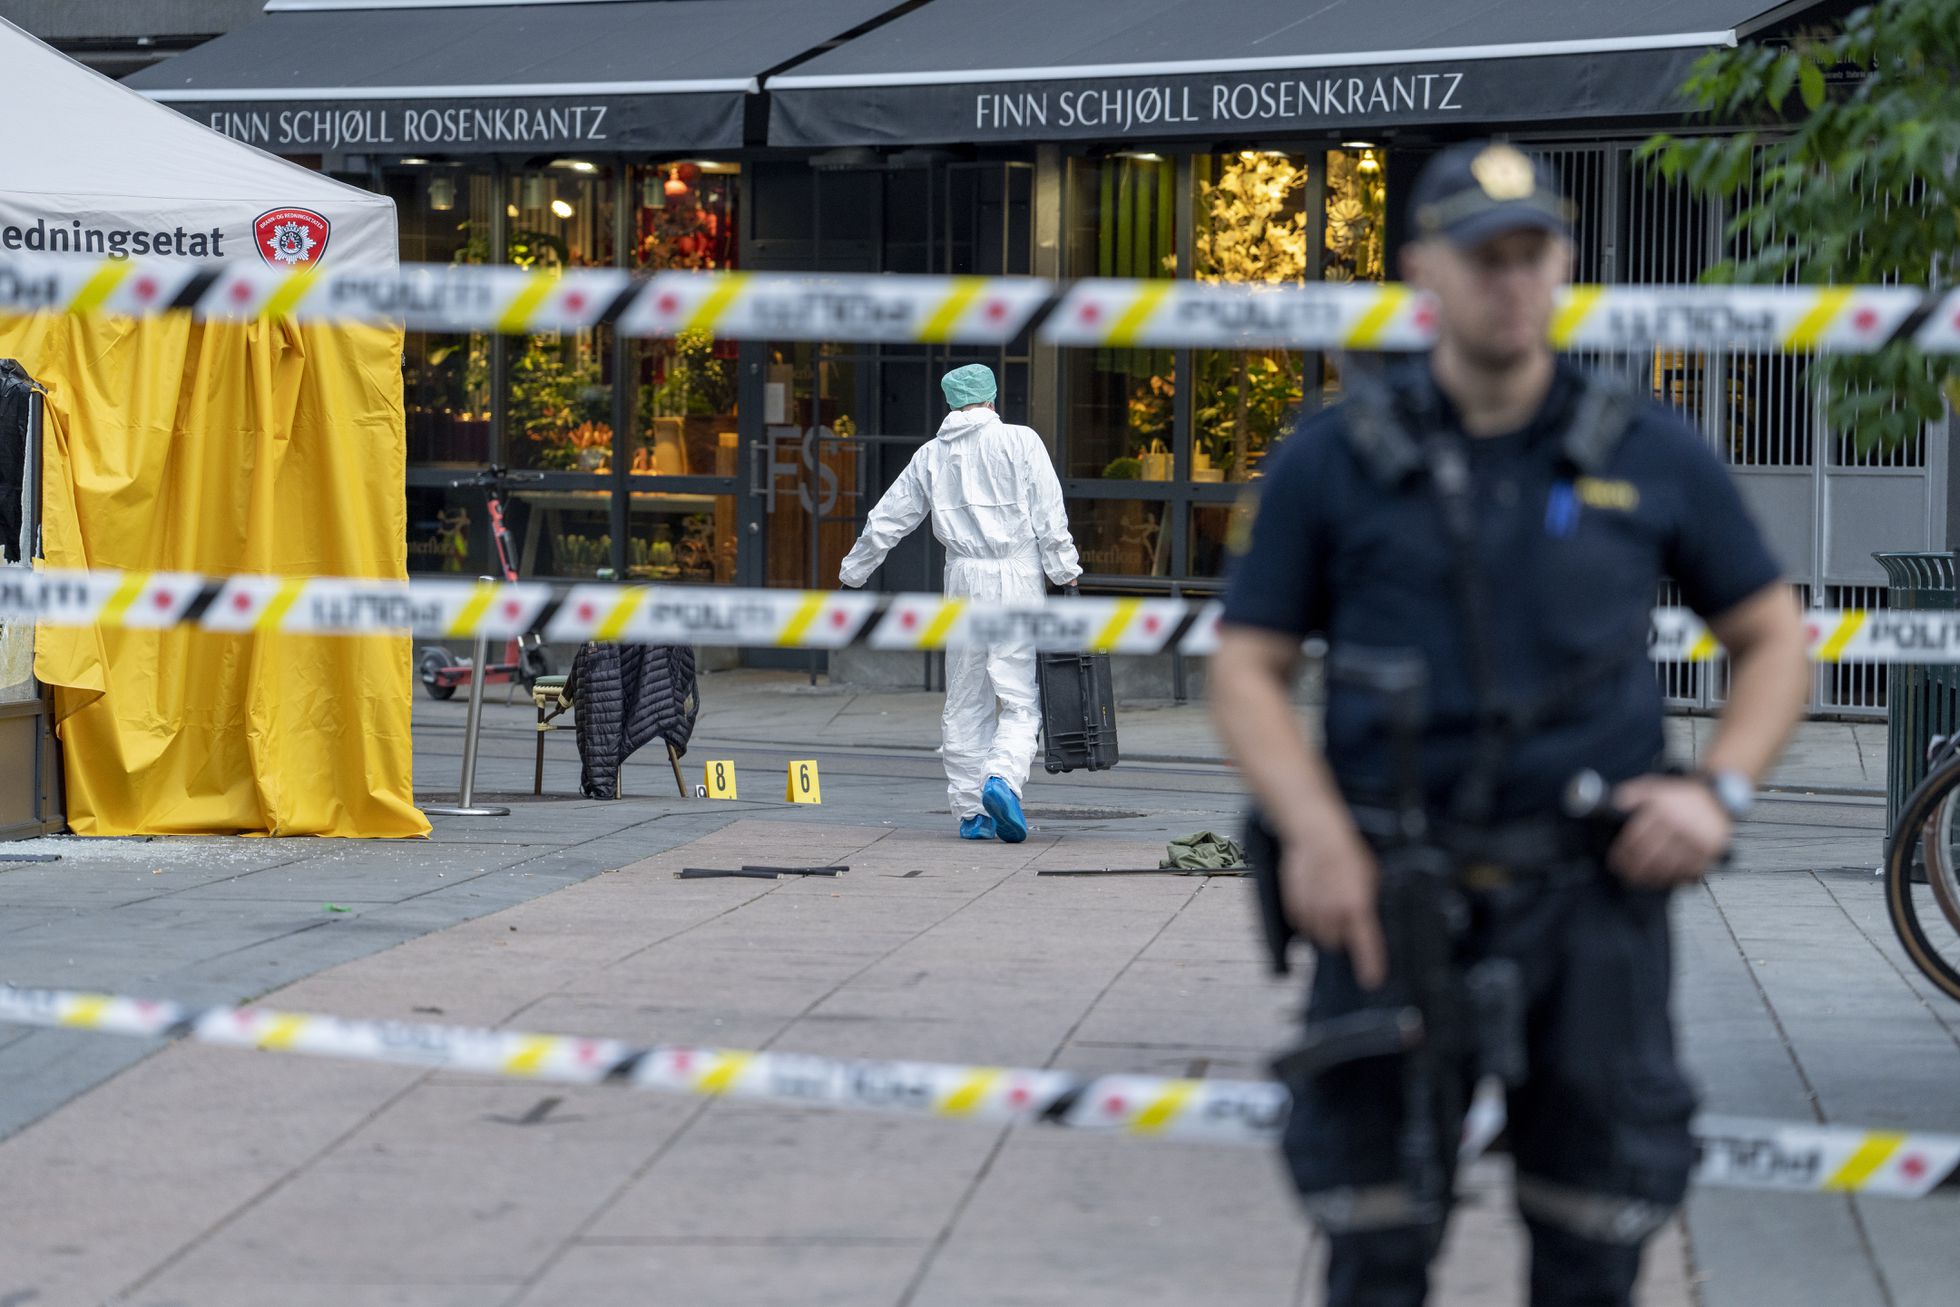 La policía noruega ha detenido al presunto agresor e investiga la agresión como un acto de terrorismo islamista
Agentes de policía trabajaban este sábado a las afueras del bar de Oslo en el que se produjo el ataque. Foto: EFE